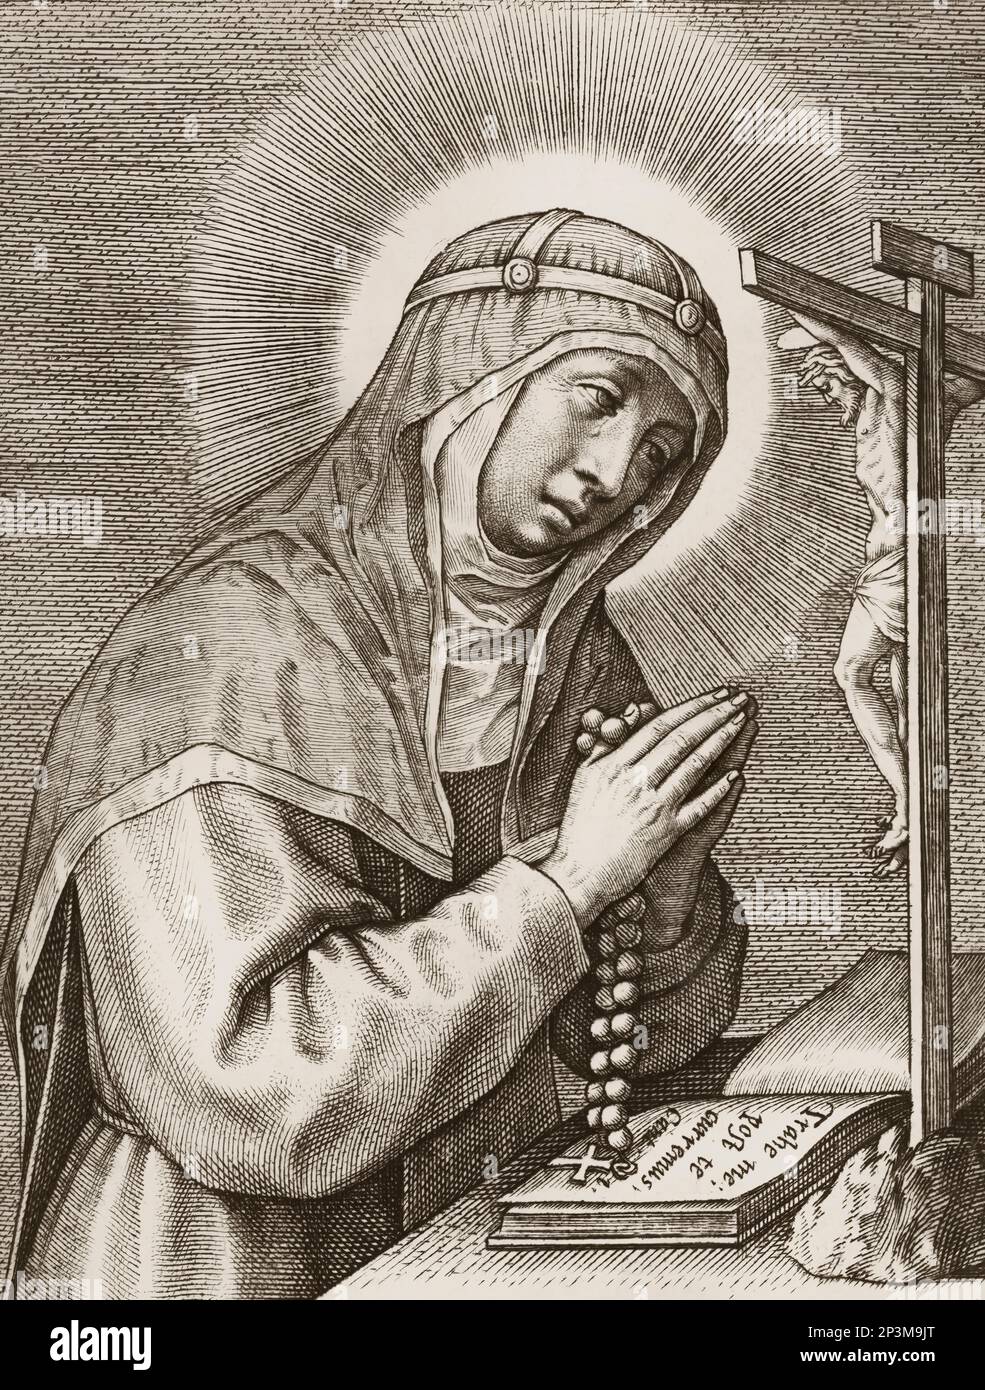 Bridget di Svezia, Saint Birgitta, c. 1303 – 1373 Foto Stock